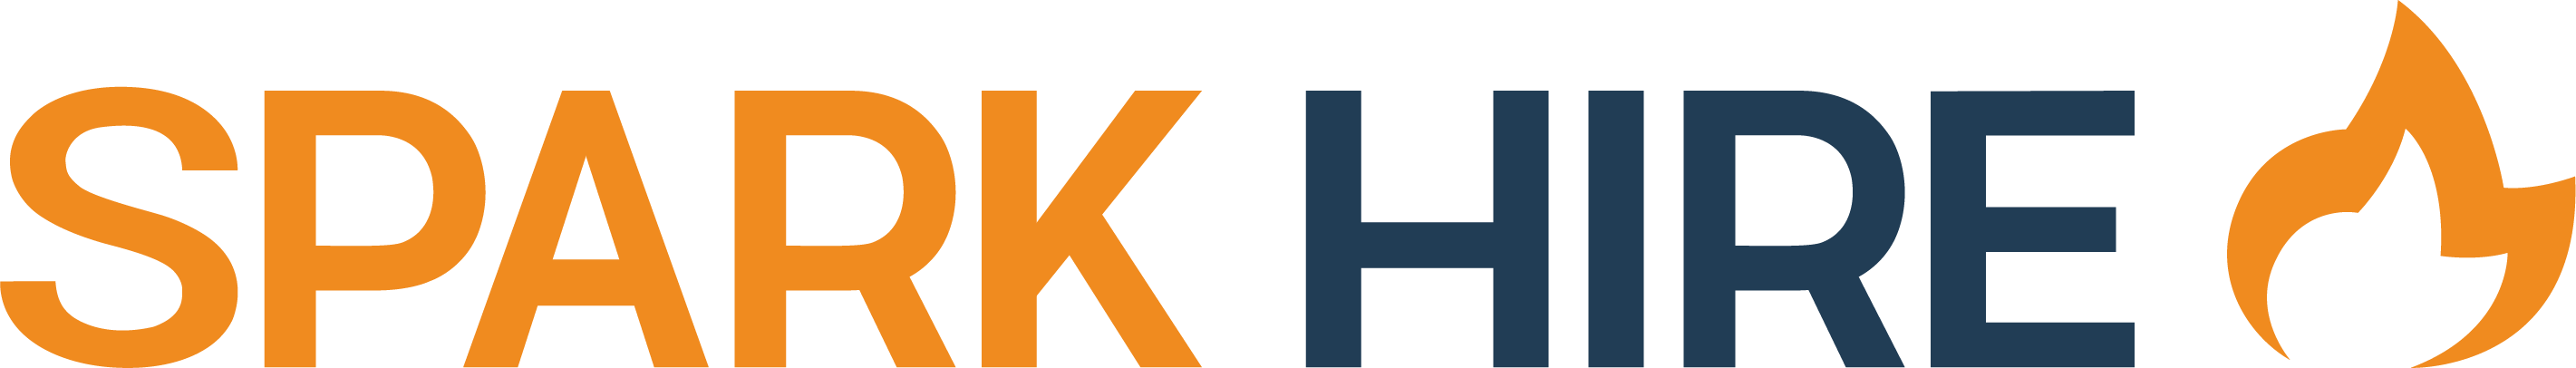 engagex logo